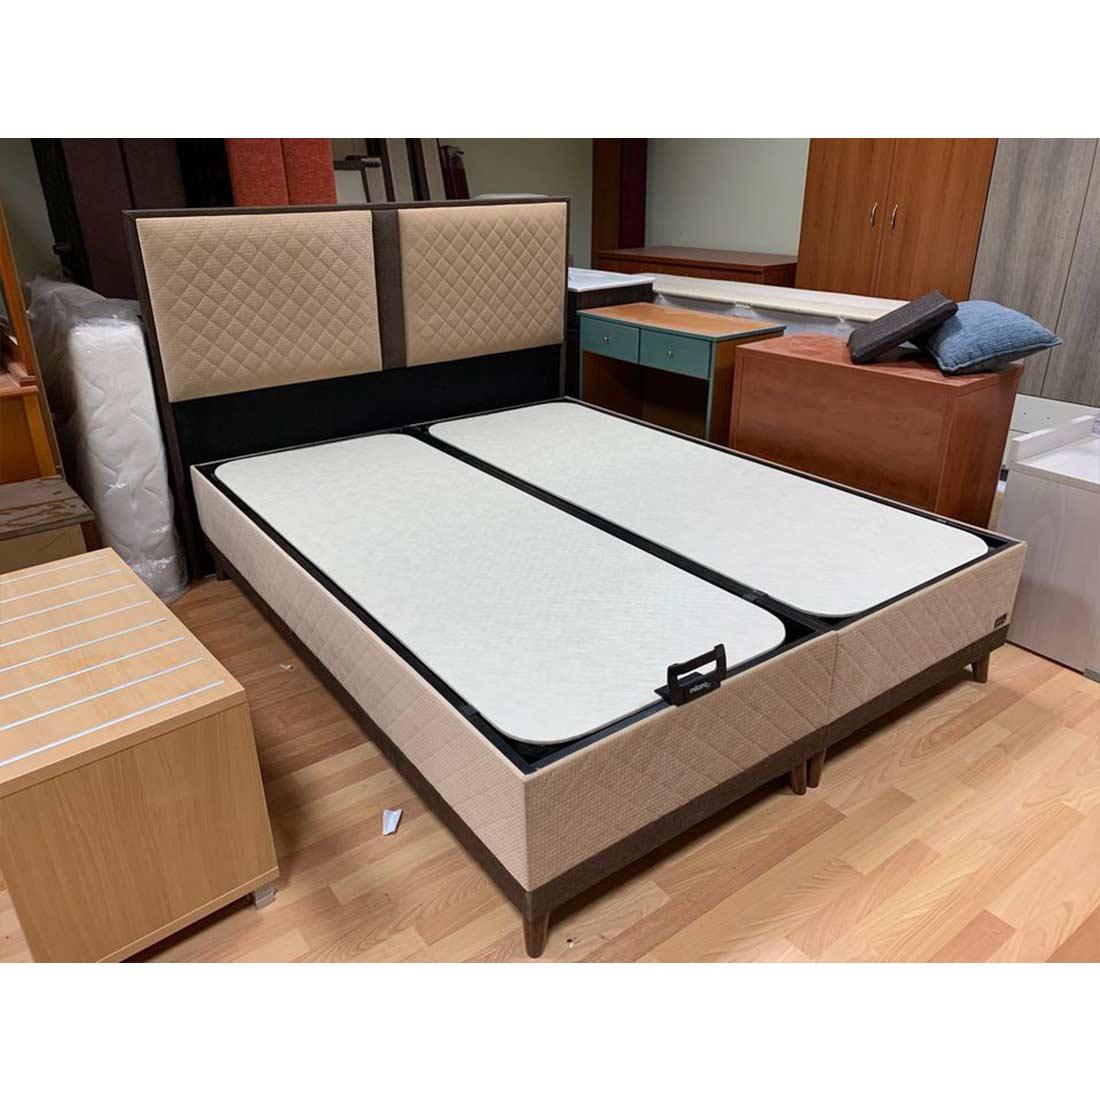 Κρεβάτι Διπλό με αποθηκευτικό χώρο με επενδυση Υφασμα 160x200